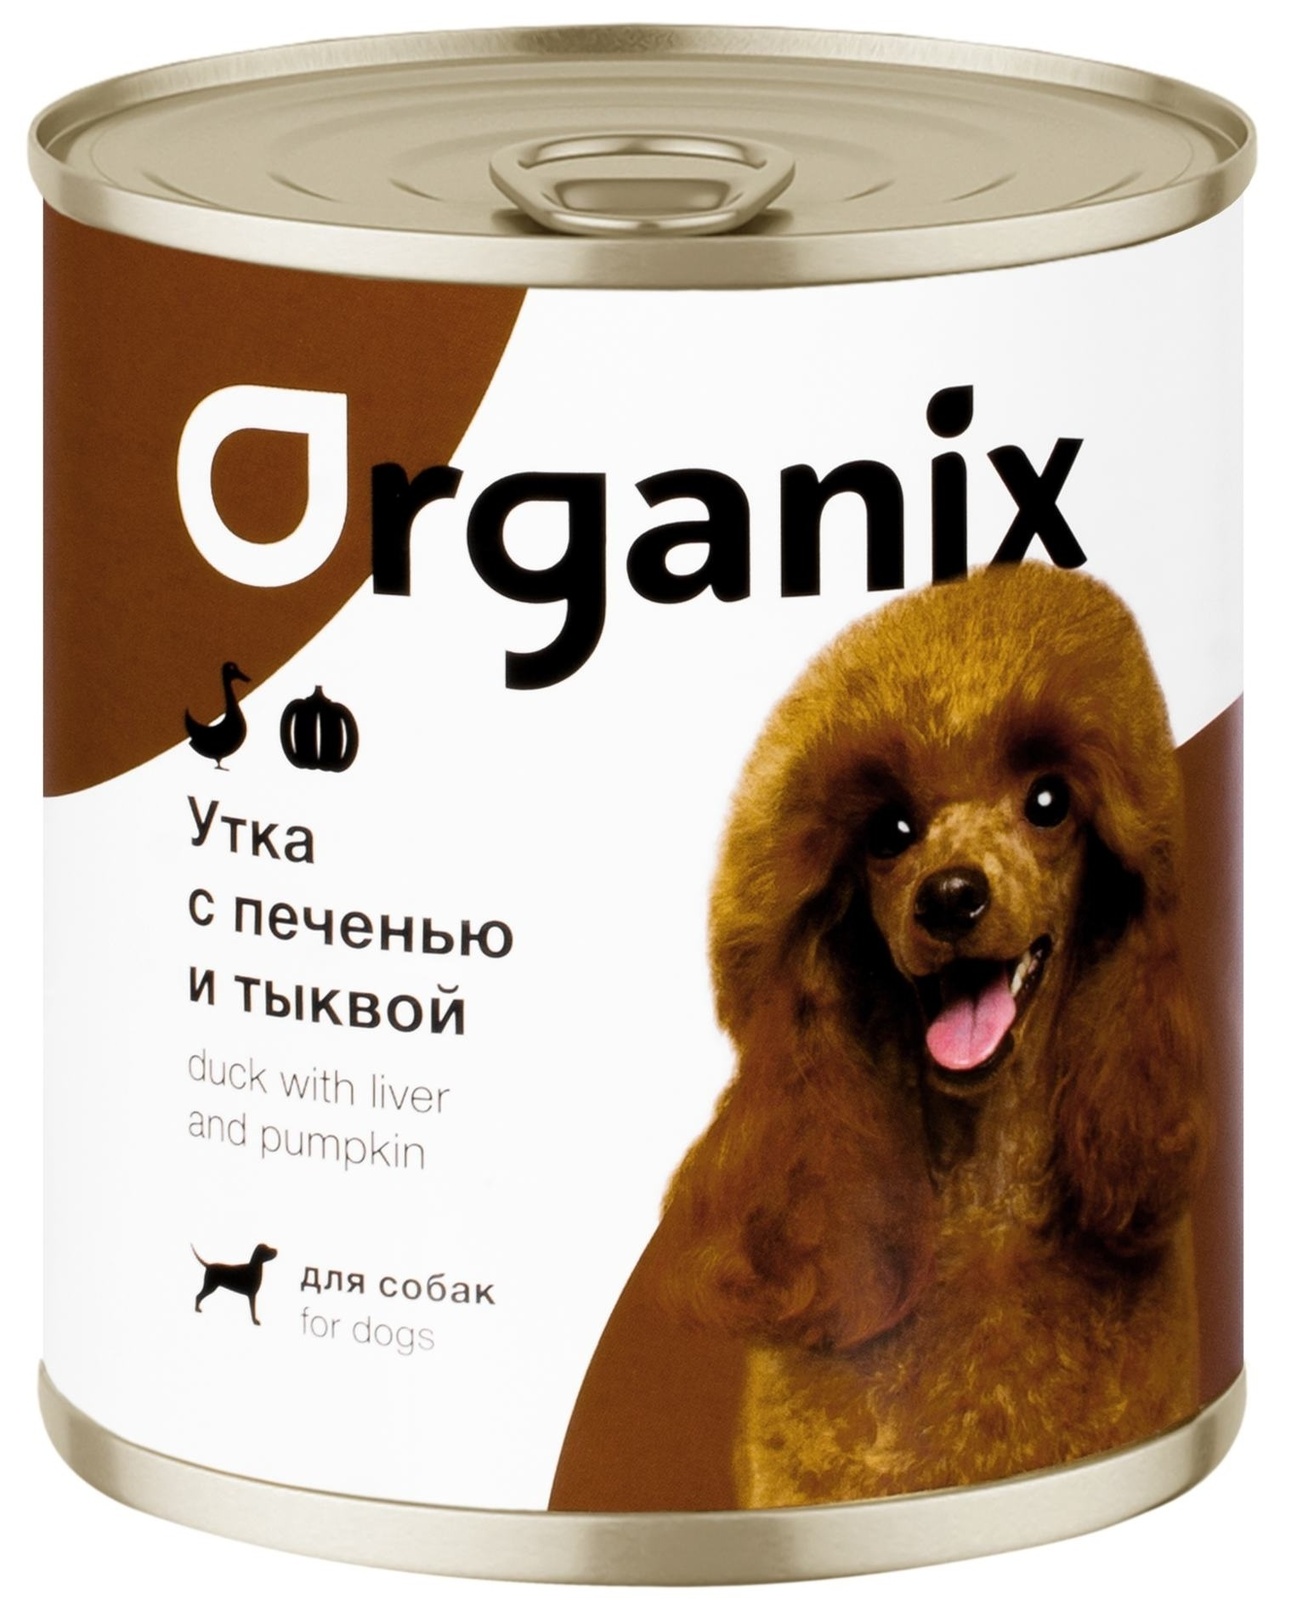 Organix консервы Organix консервы для собак Сочная утка с печенью и тыквой (400 г) organix консервы organix монобелковые премиум консервы для собак с кониной 400 г